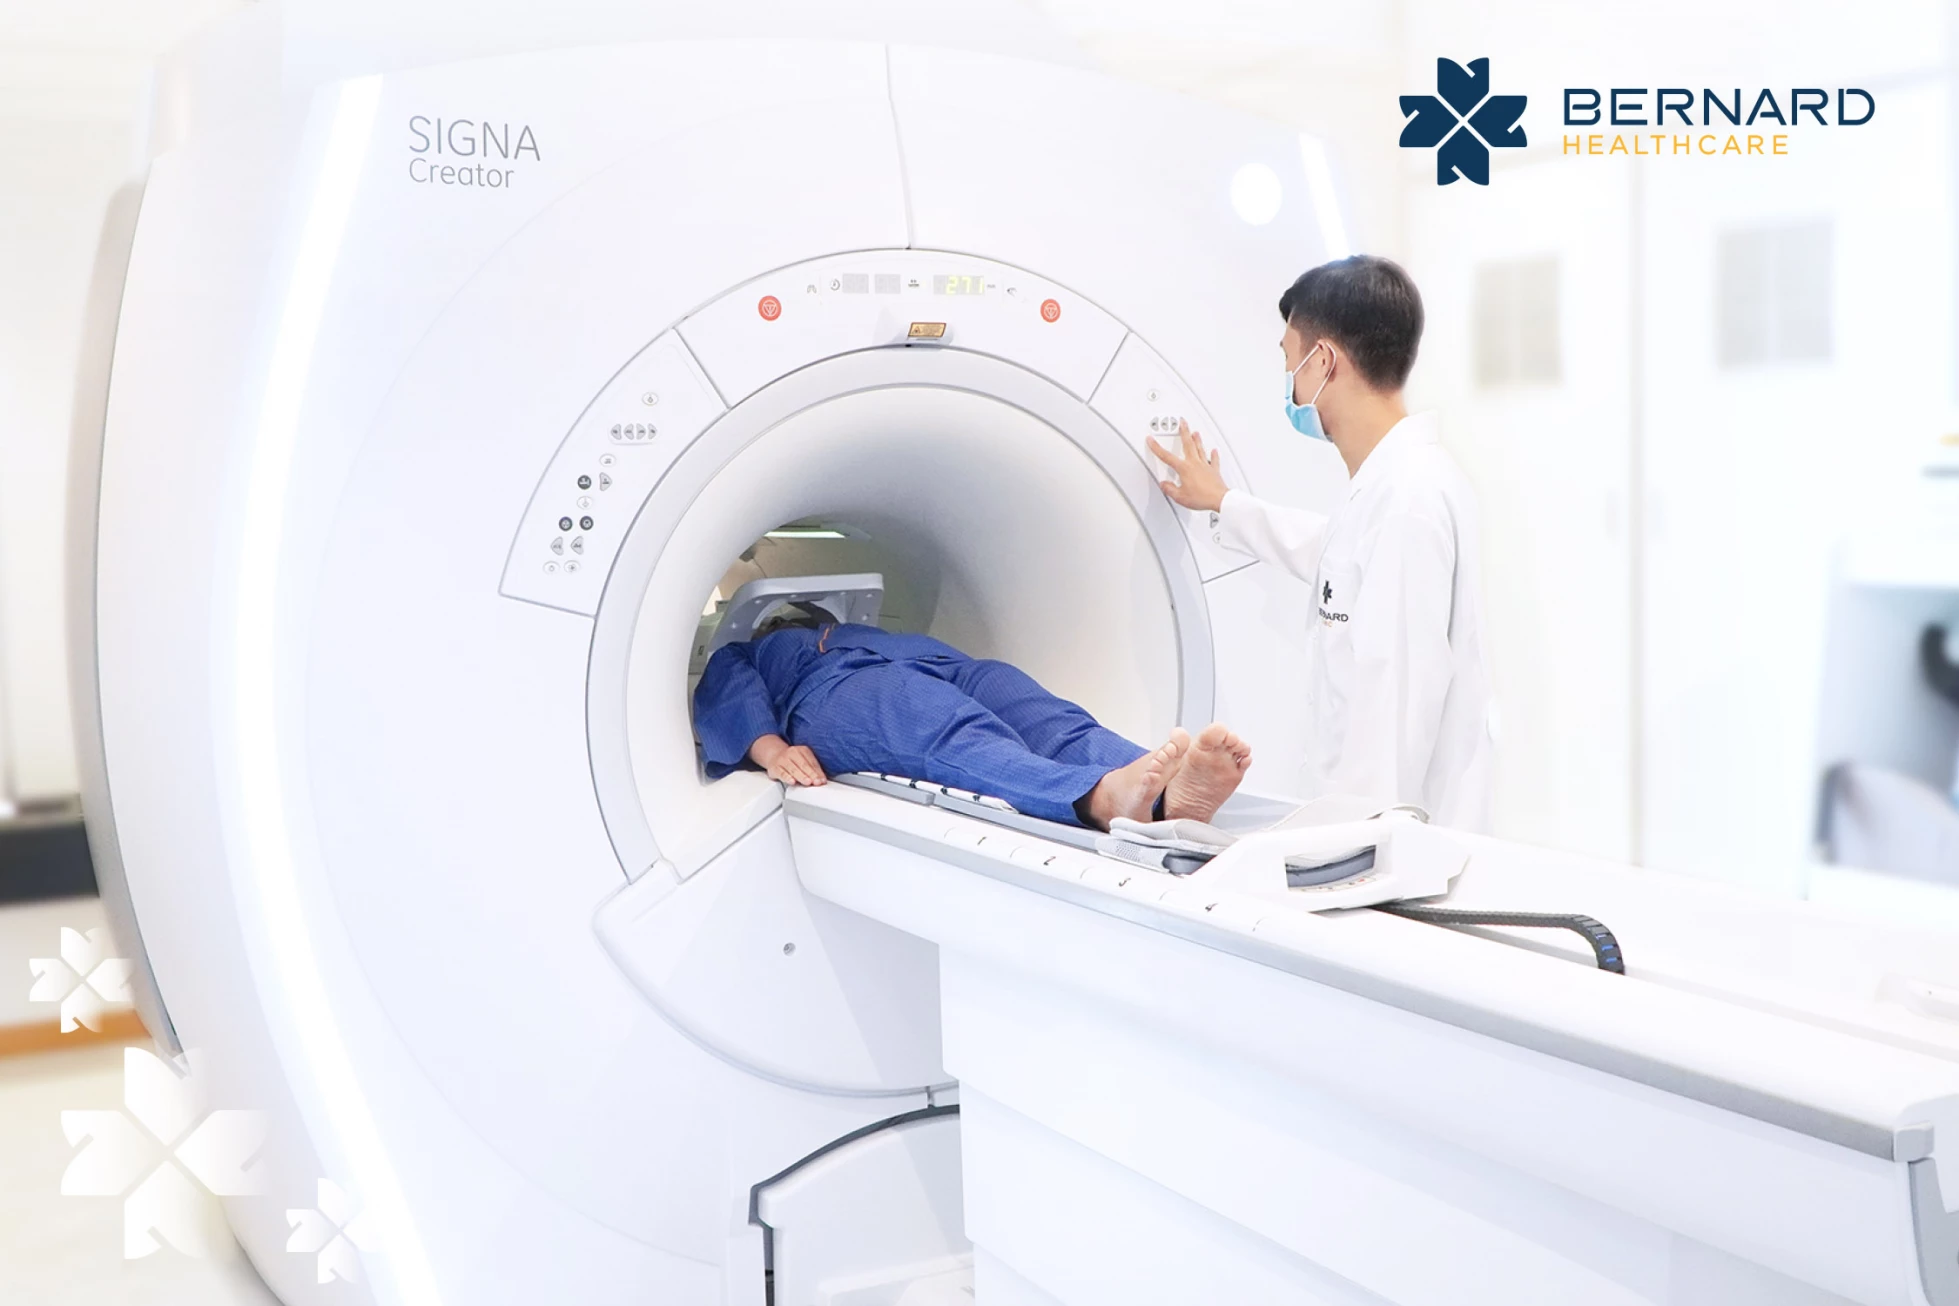 Hệ thống MRI của Bernard Healthcare còn tích hợp trí tuệ nhân tạo - GE Healthcare (Mỹ) giúp phát hiện các mầm mống ung thư